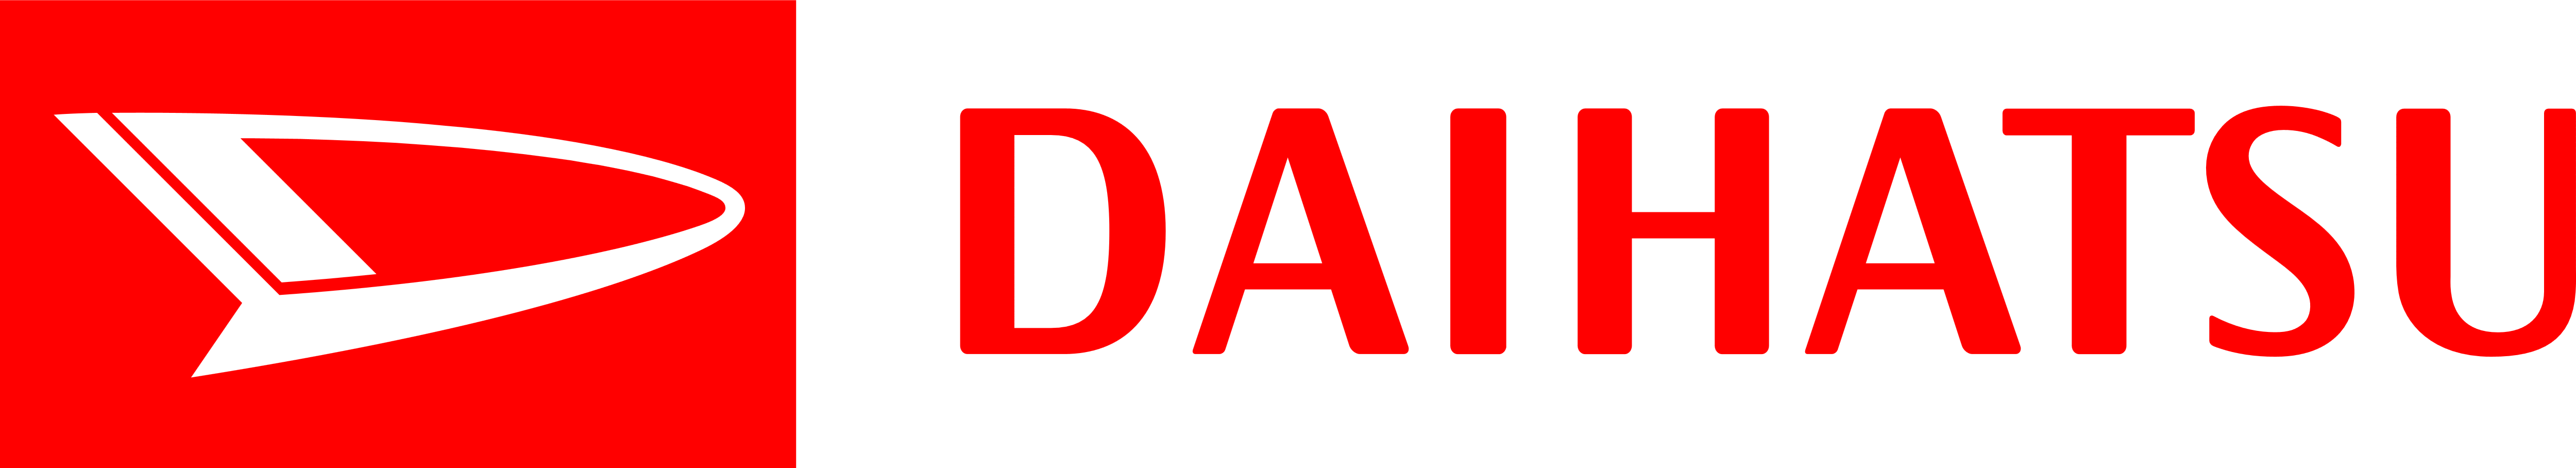 Daihatsu_logo_logotype_emblem